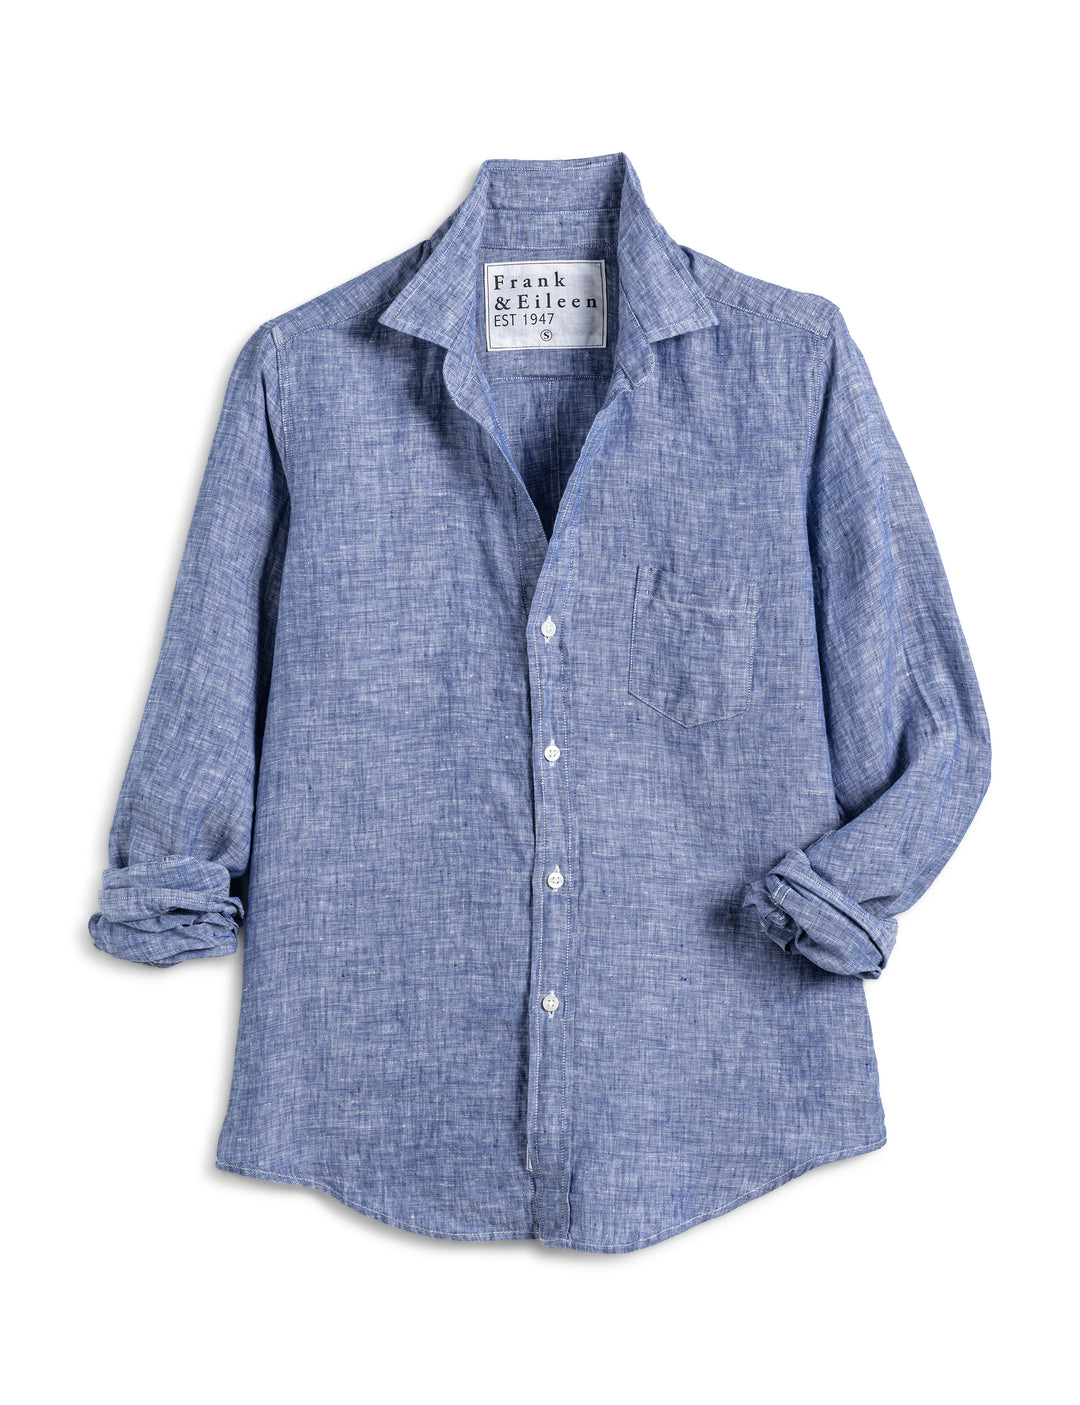 Frank & Eileen - Barry Button Up Shirt in Famous Blue Linen